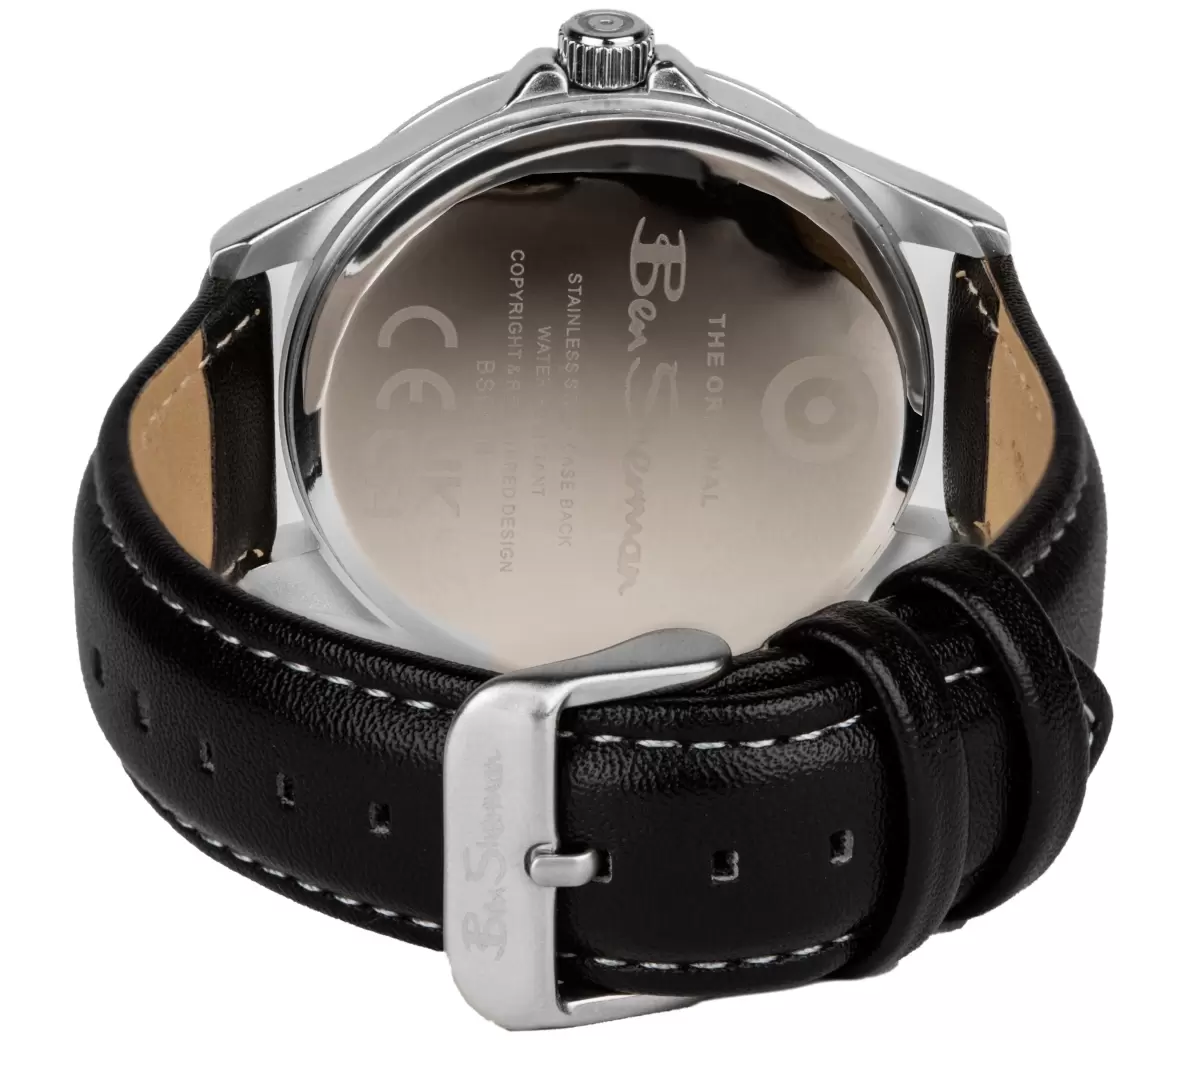 Watches Black/White/Silver Ben Sherman Men Contemporary Men's Strap Watch, 41Mm - Black/White/Silver - 2